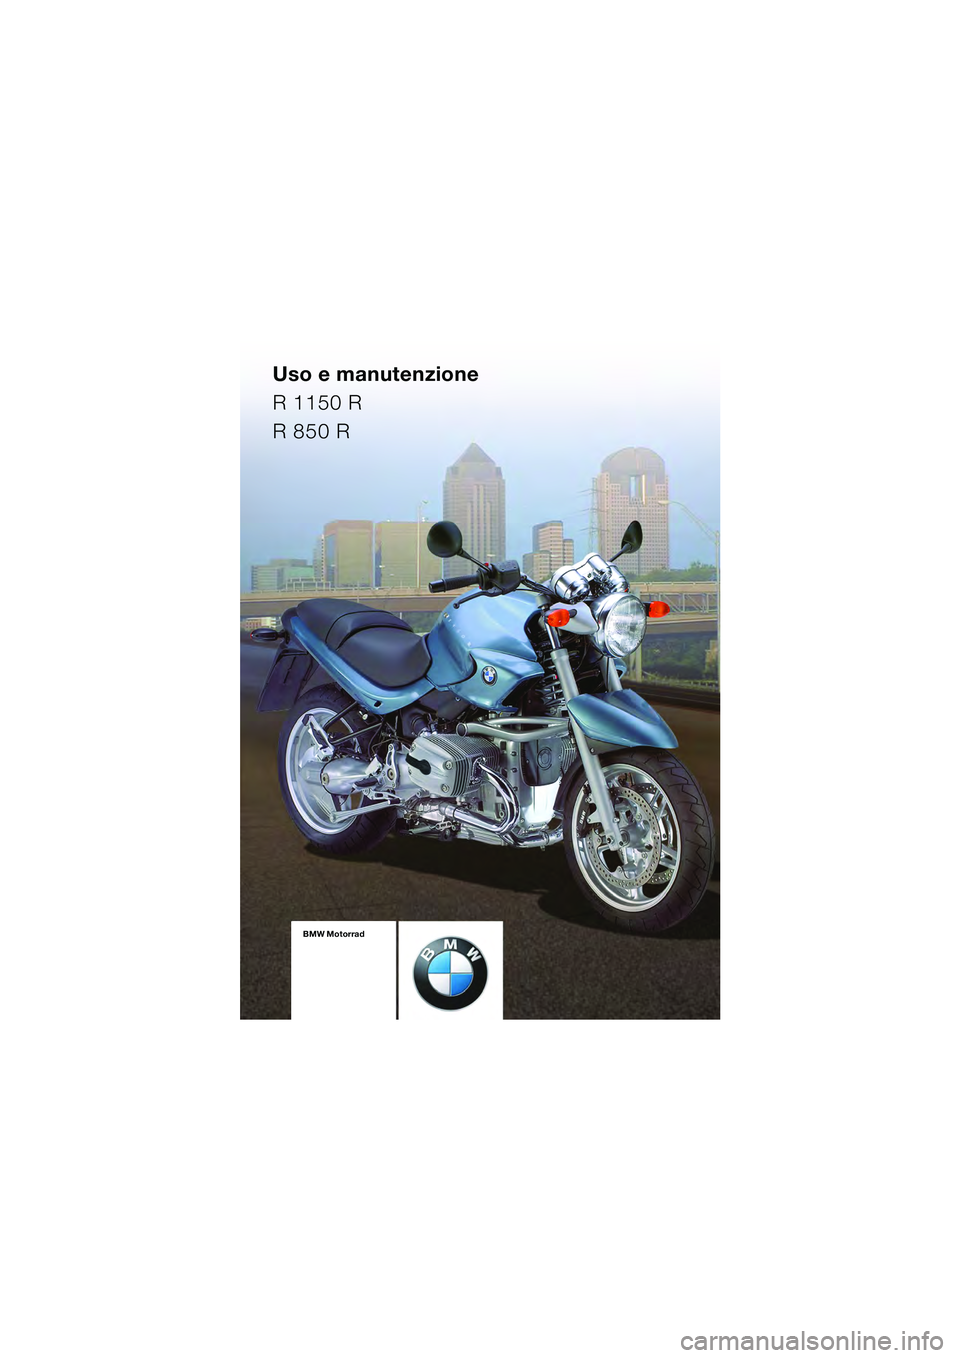 BMW MOTORRAD R 850 R 2004  Libretto di uso e manutenzione (in Italian) Uso e manutenzione
R 1150 R
R 850 R
BMW Motorrad
Documentazione  
di bordo
comprendente il  
Libretto uso e  
manutenzione e le  
Istruzioni per la  
manutenzioneBMW Motorrad
Documentazione  
di bordo